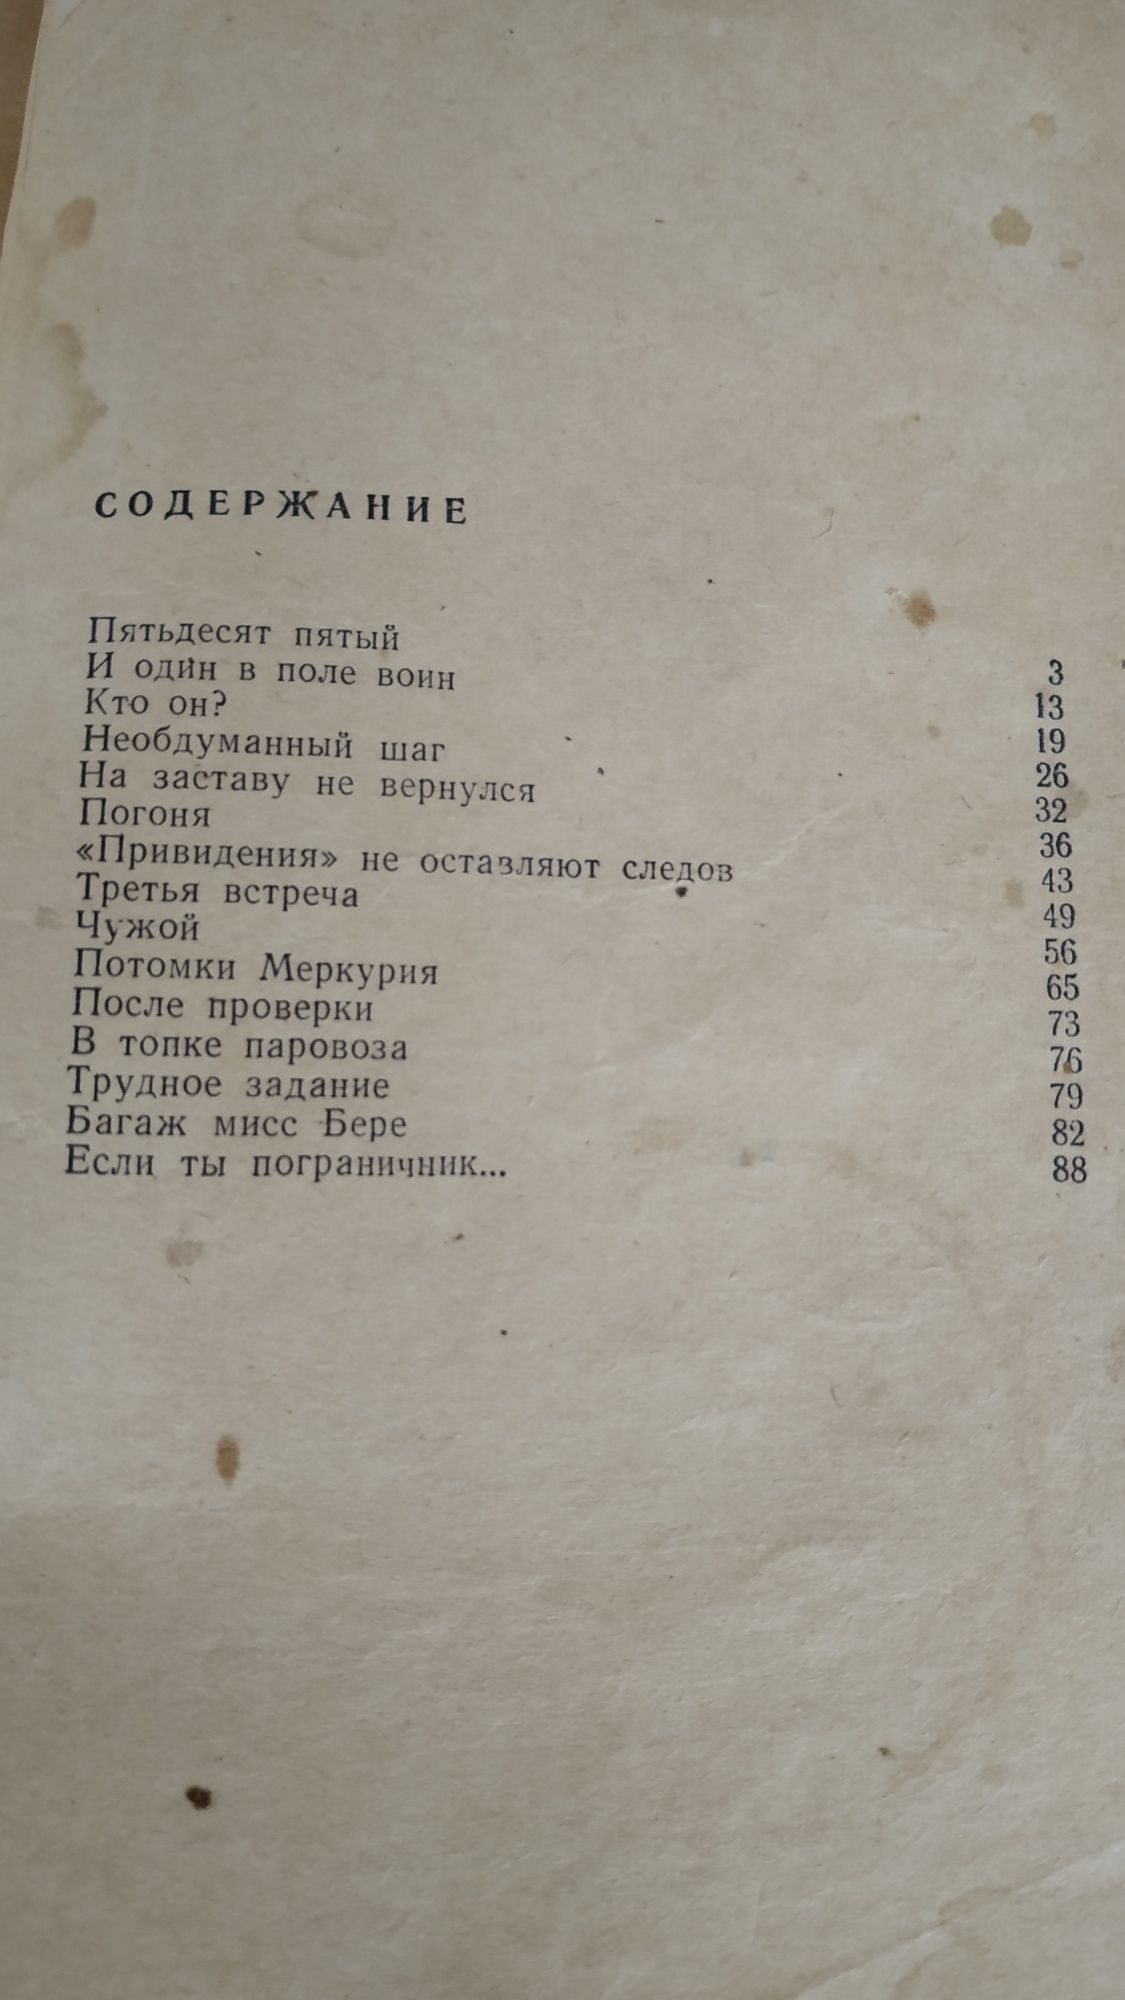 Роман 1961 года издания